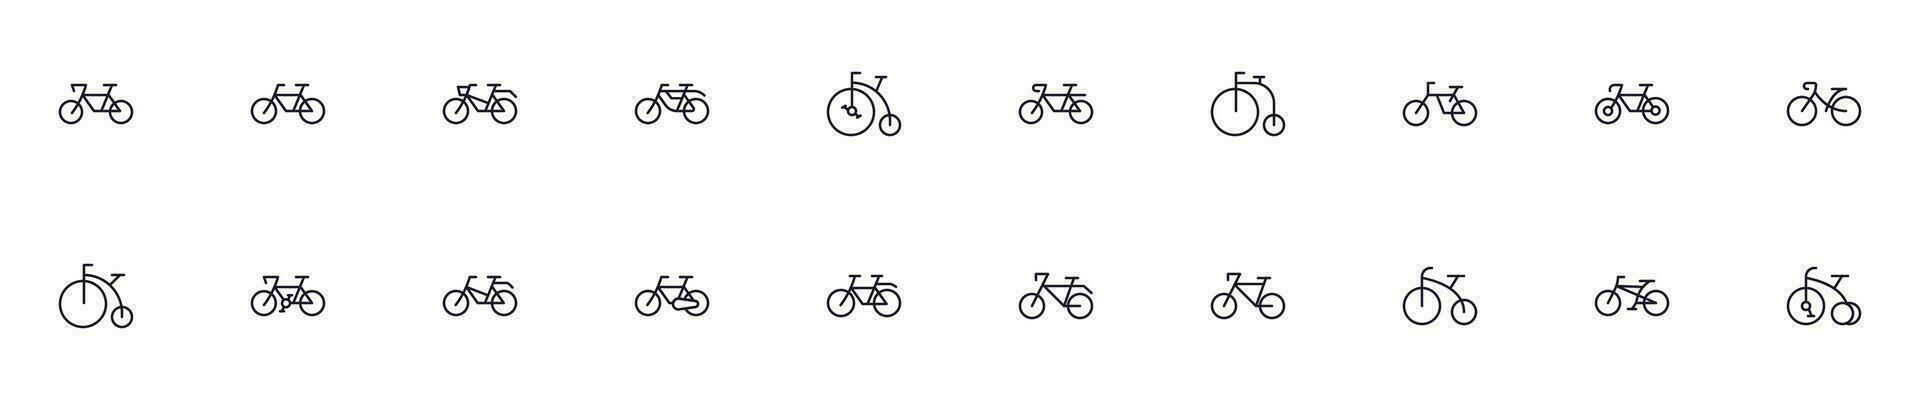 Sammlung von modern Fahrrad Gliederung Symbole. einstellen von modern Abbildungen zum Handy, Mobiltelefon Apps, Netz Websites, Flyer, Banner usw isoliert auf Weiß Hintergrund. Prämie Qualität Zeichen. vektor